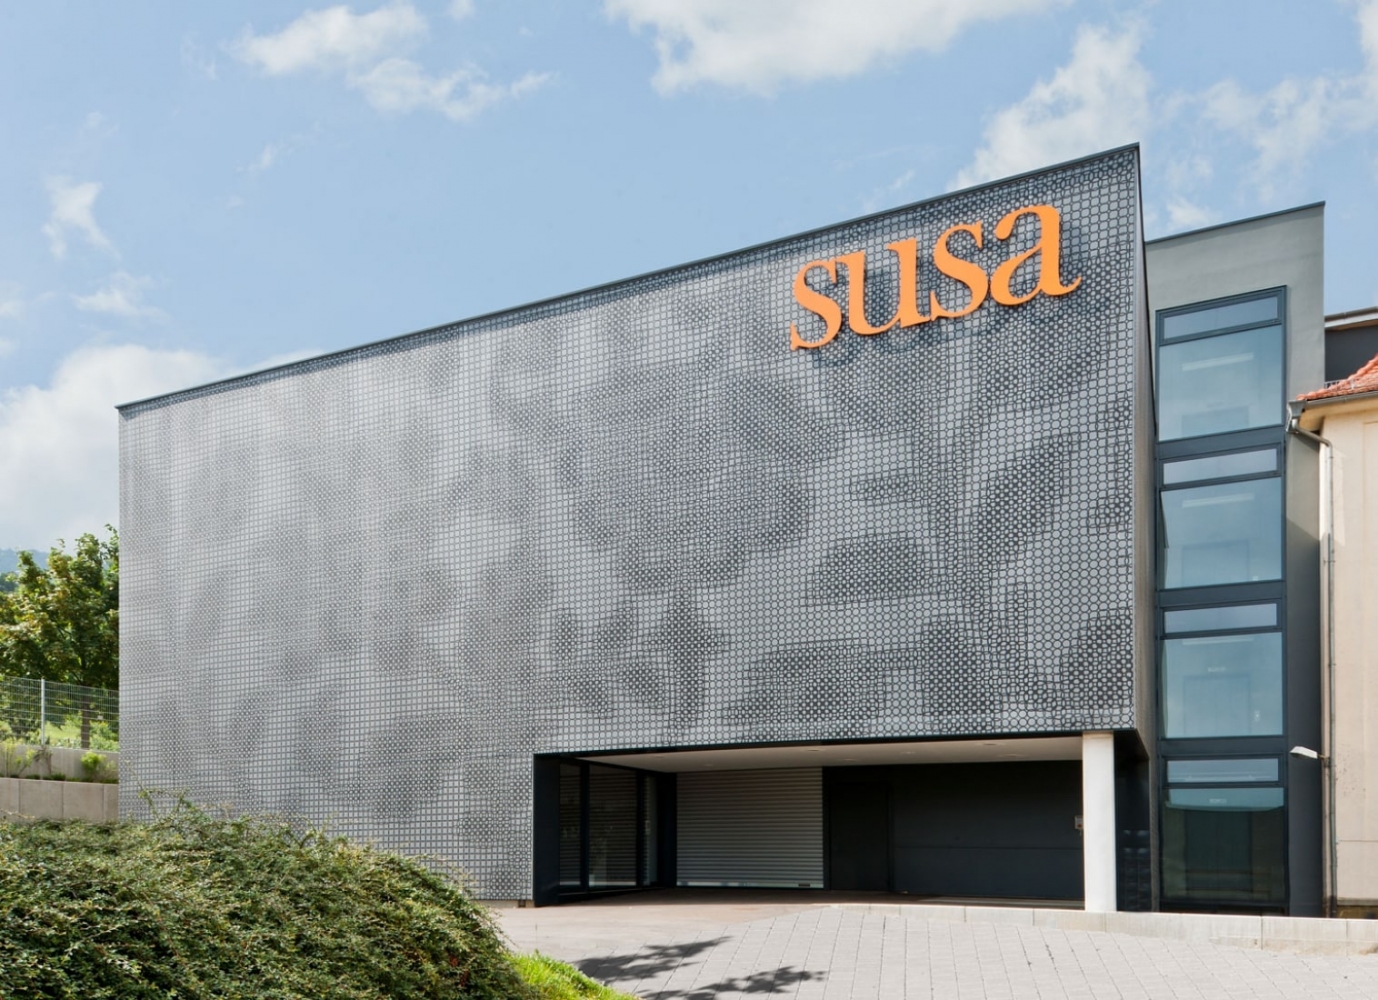 Gevel van de showroom van de firma Susa